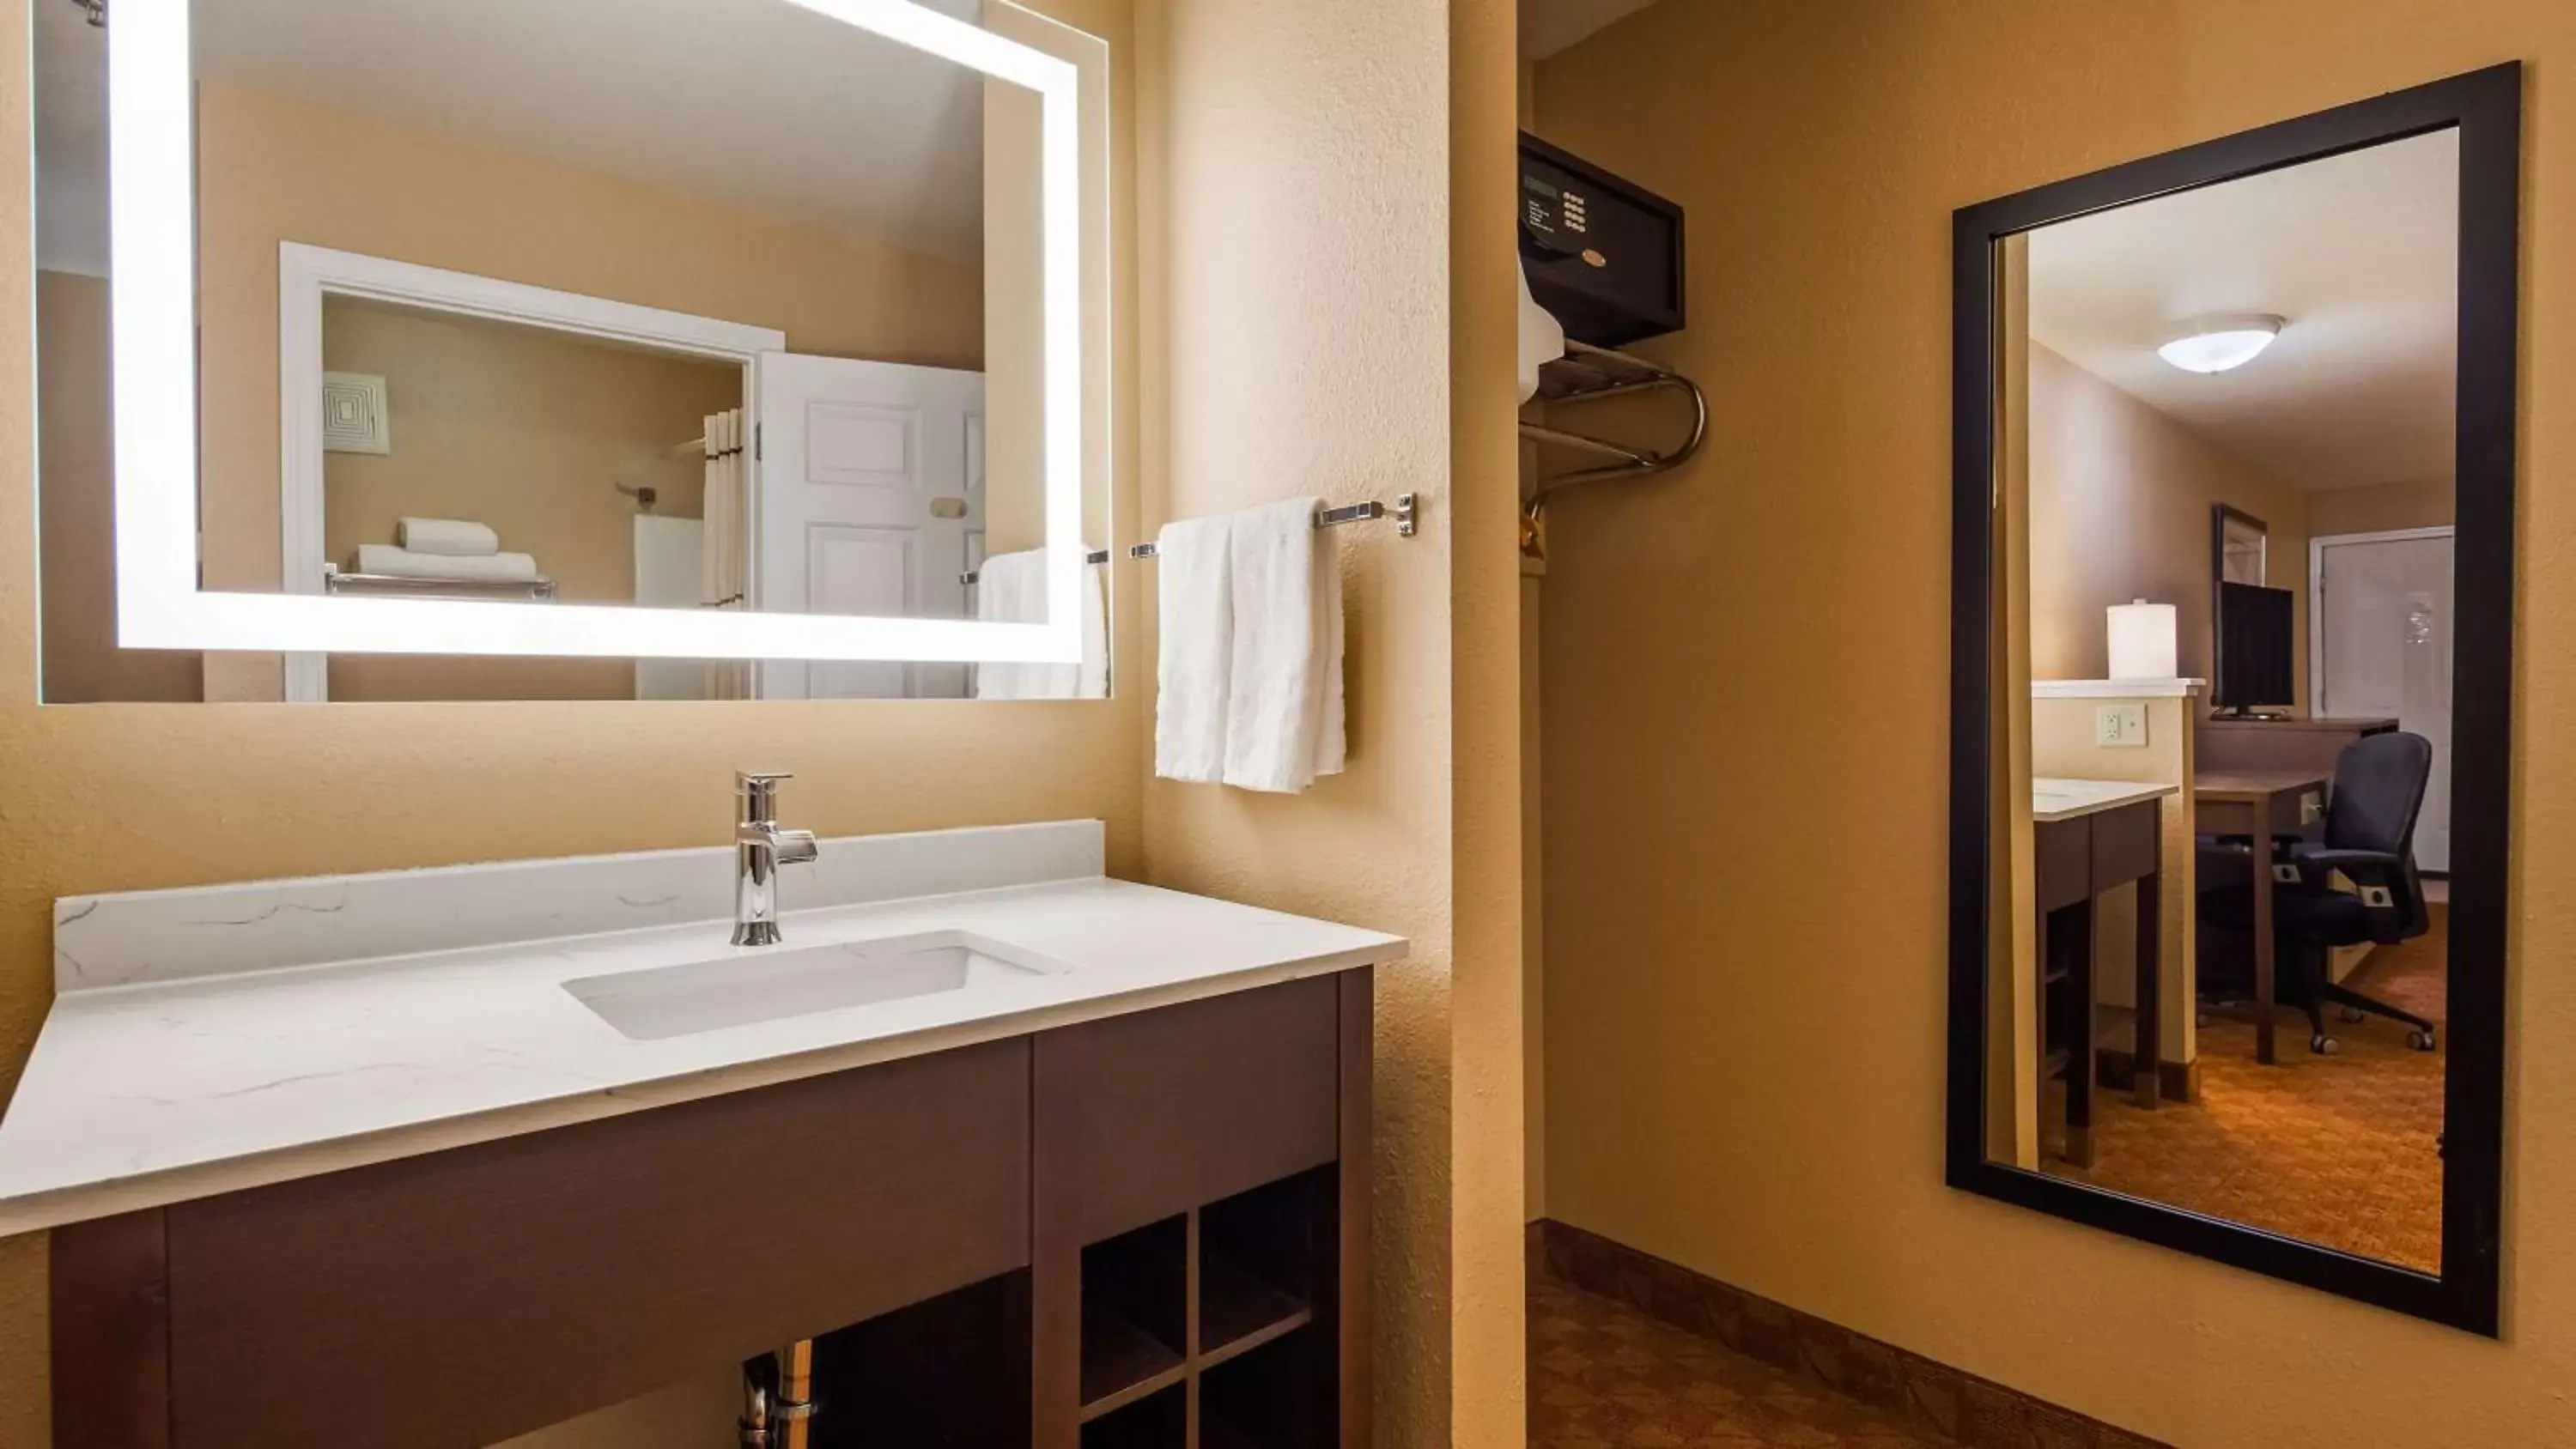 Bedroom, Bathroom in Best Western Fallon Inn & Suites